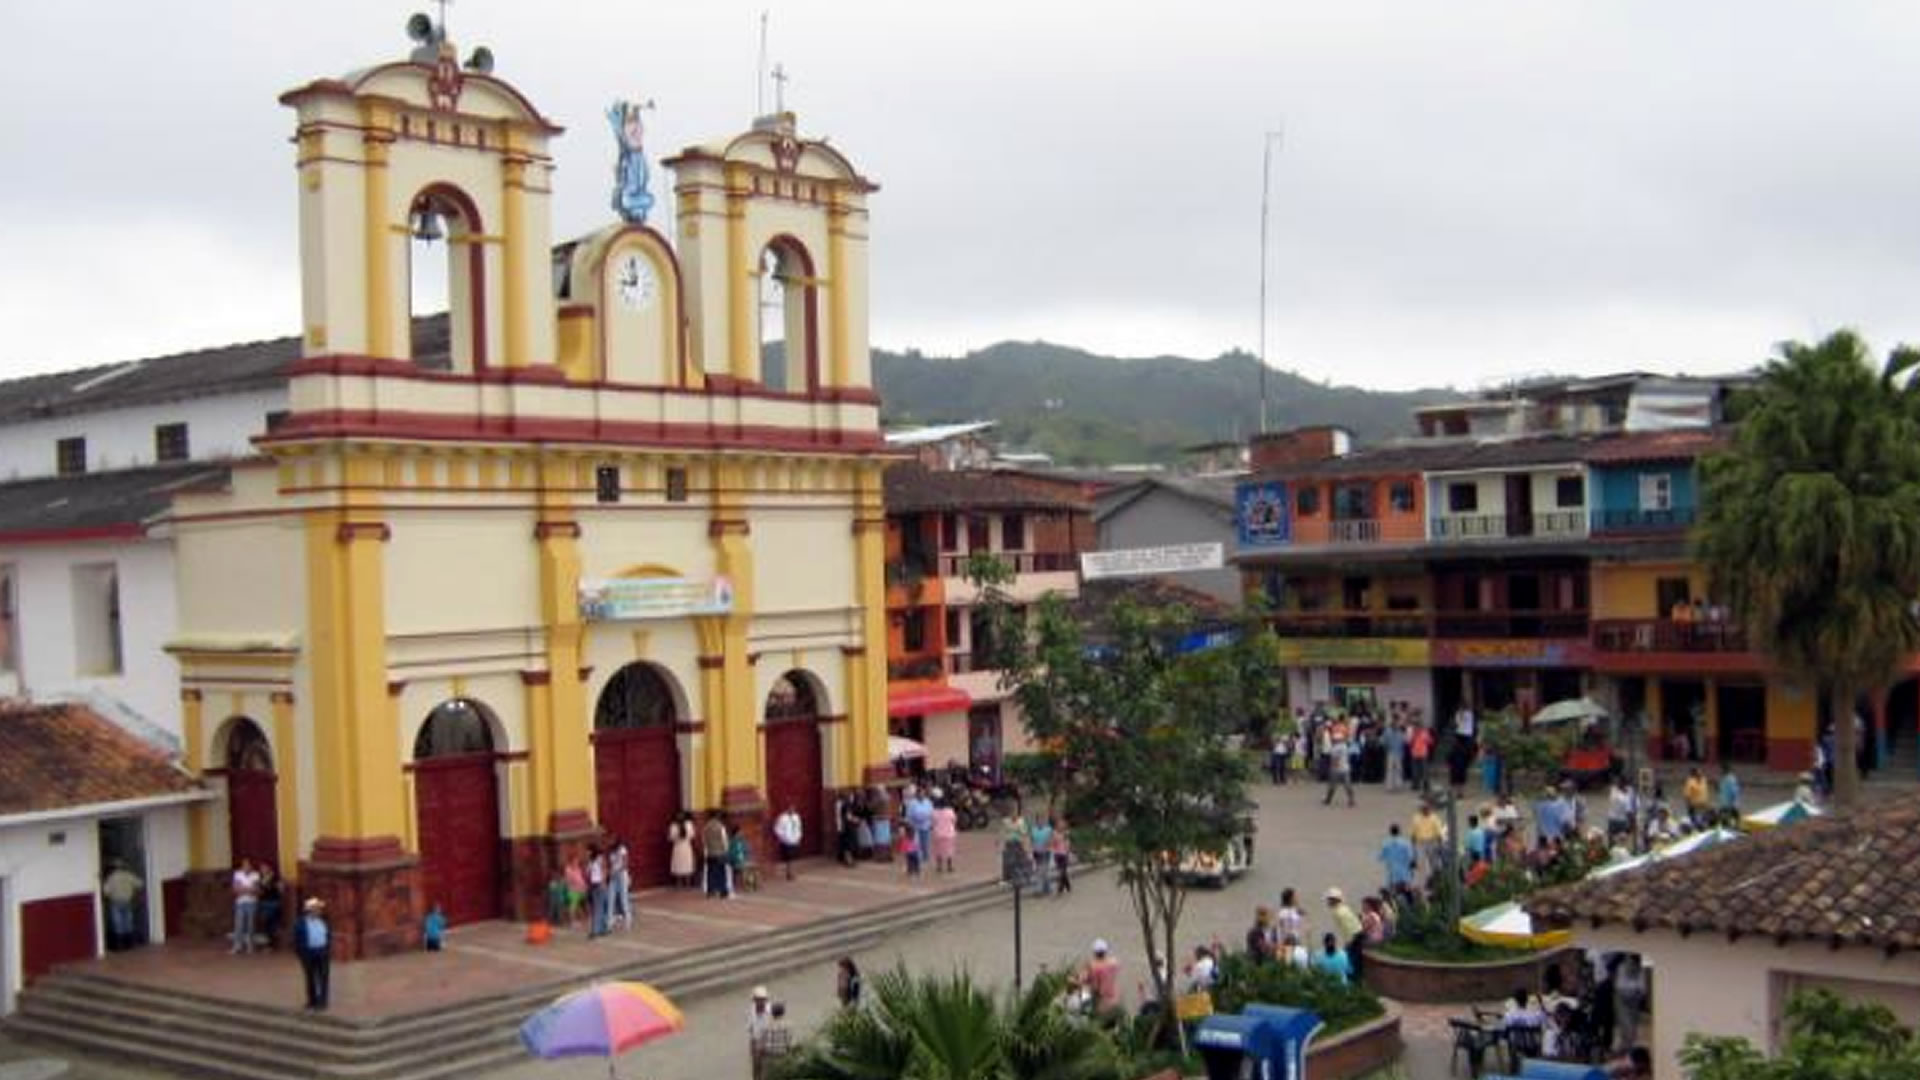 Por racha de violencia decretan toque de queda en Anorí, Antioquia hasta el lunes